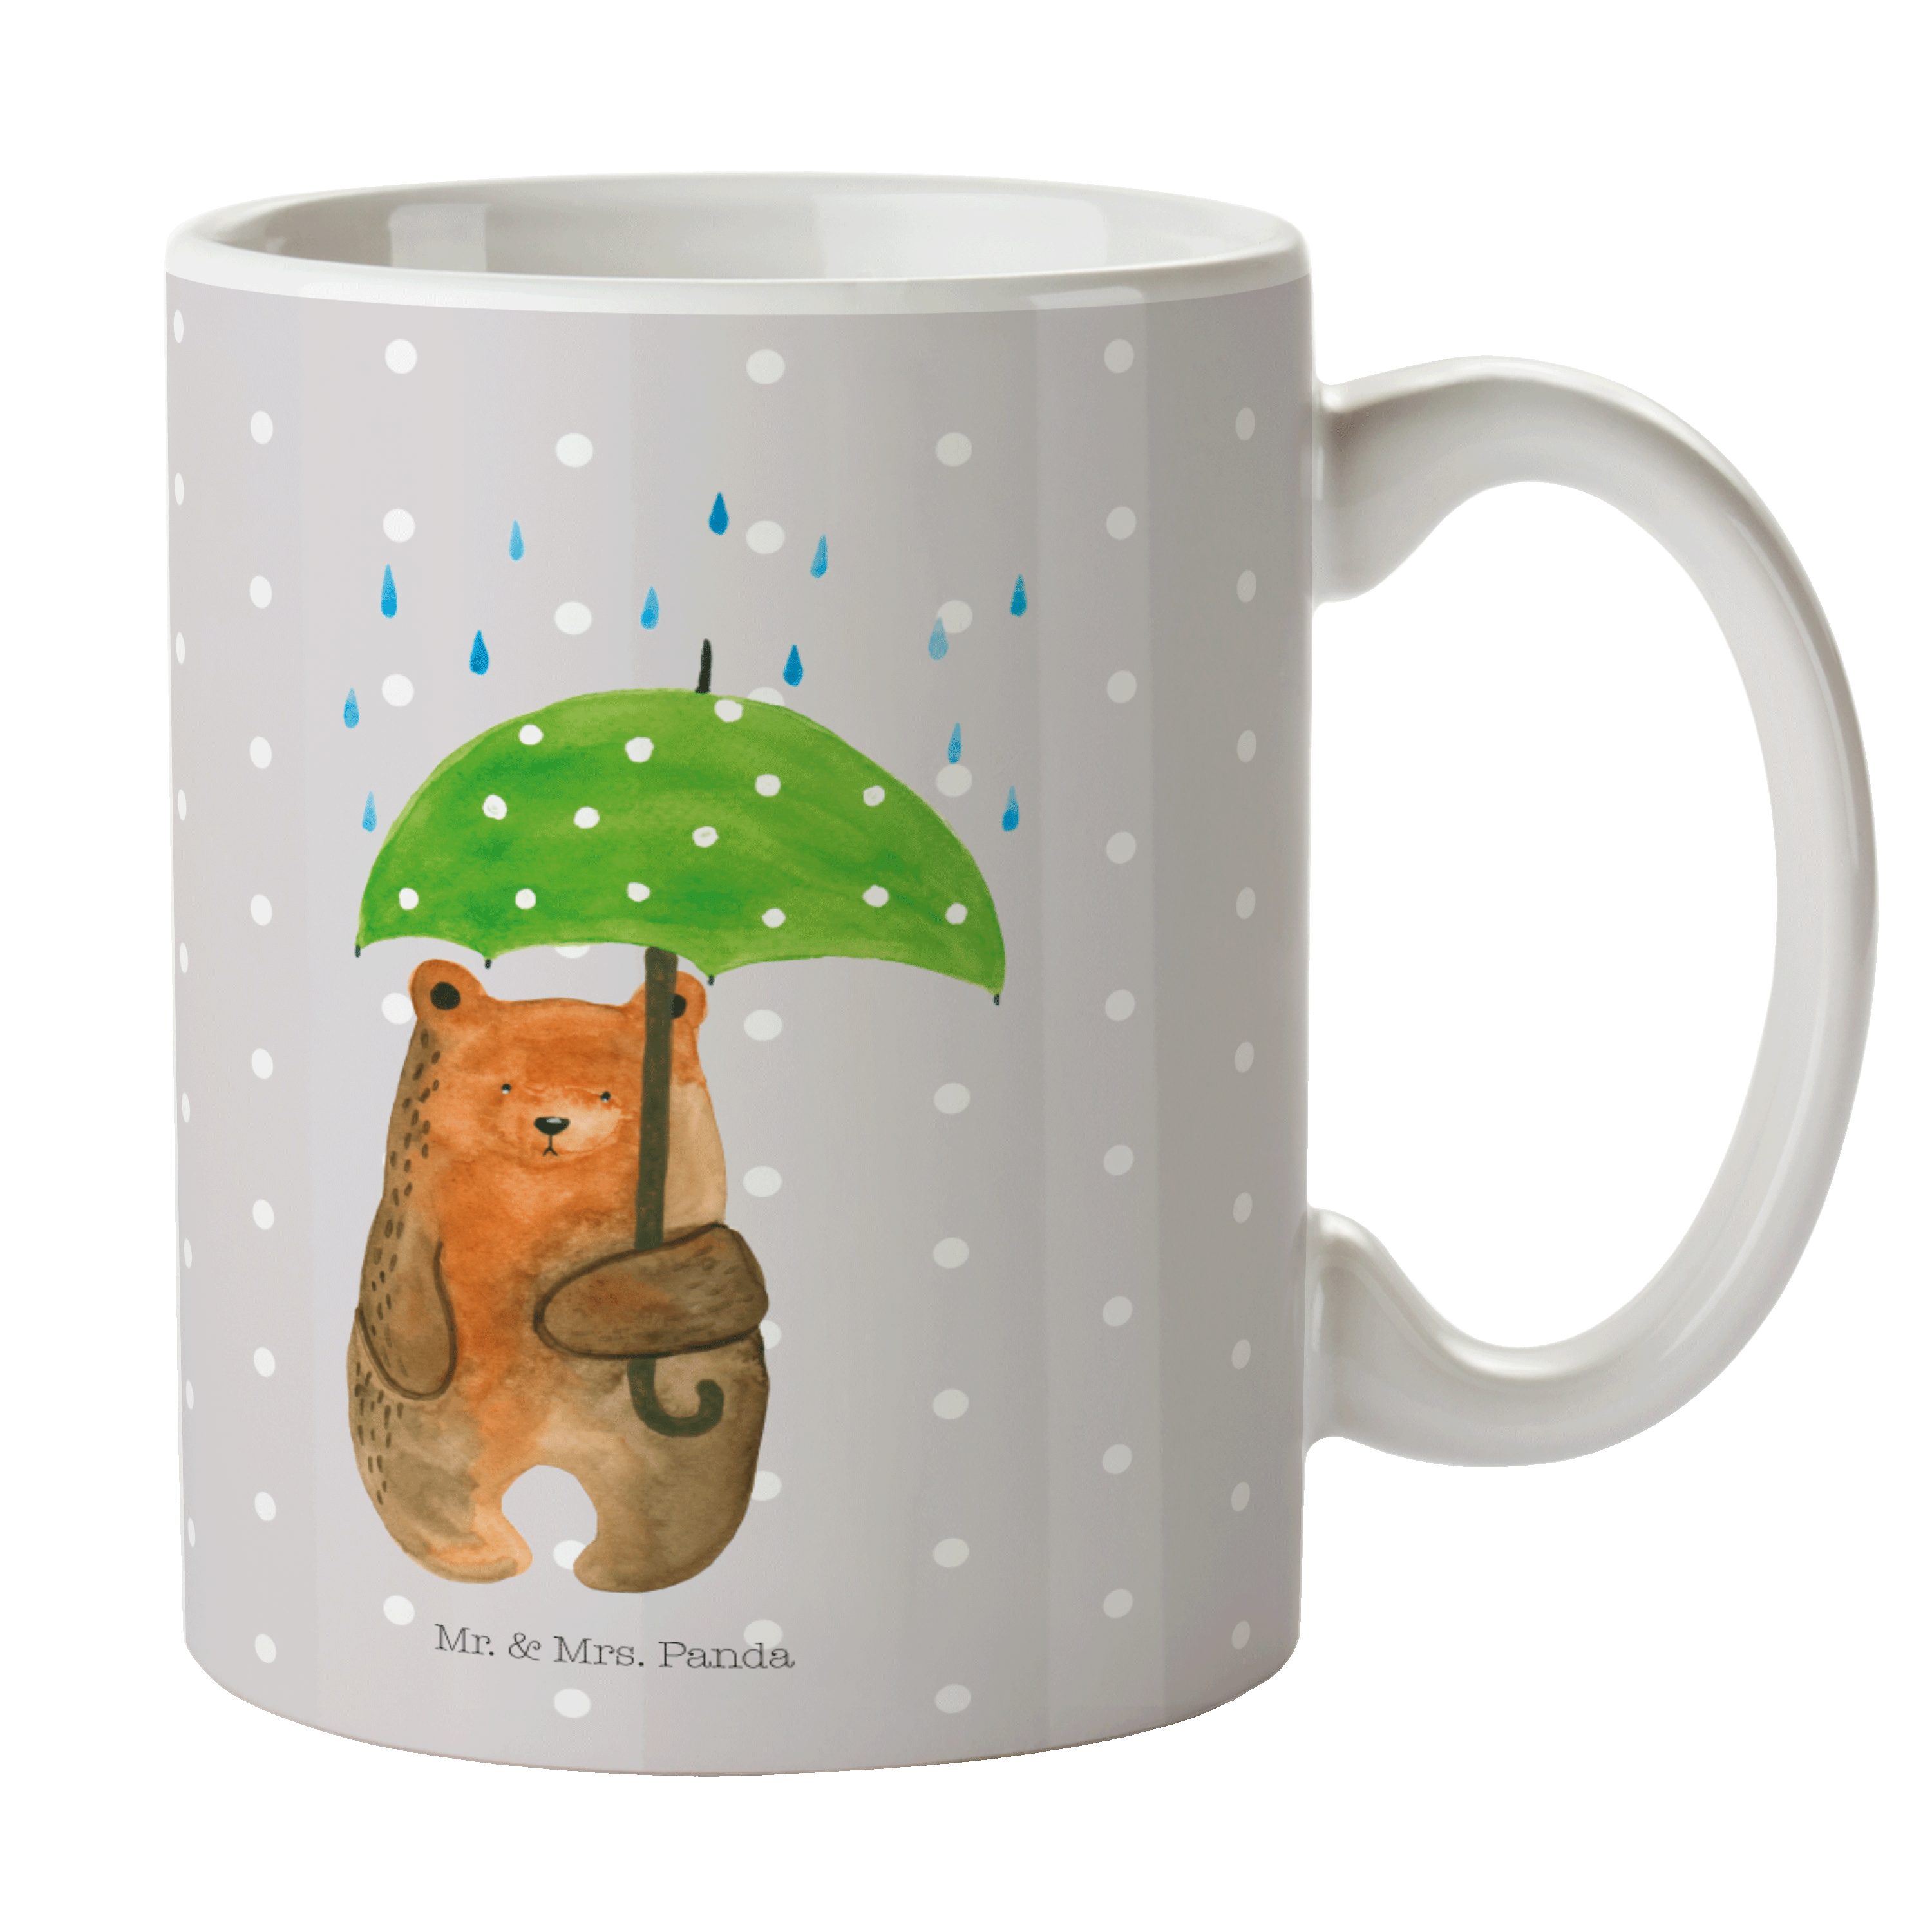 Mr. & Mrs. Panda Tasse Bär mit Regenschirm - Grau Pastell - Geschenk, Spruch, Becher, Kaffee, Keramik